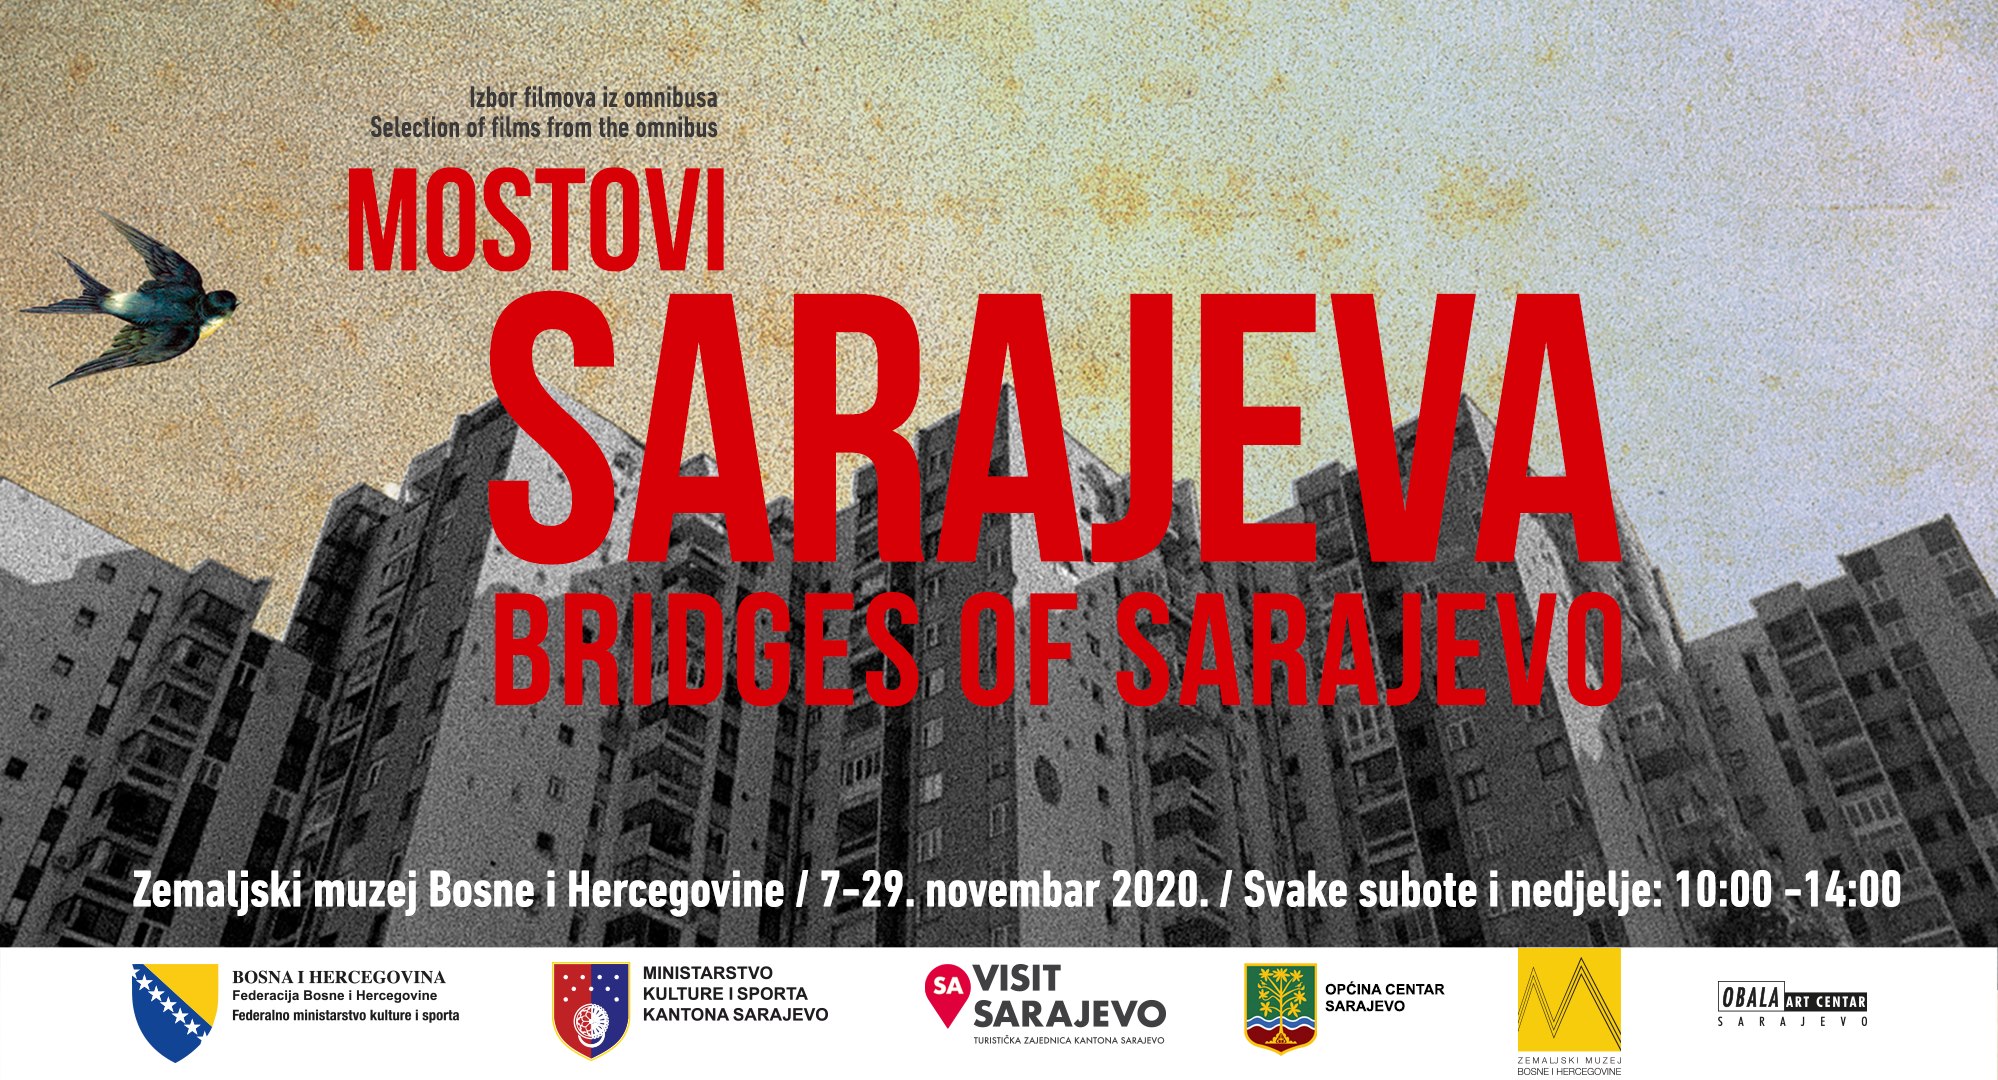  Pogledajte filmove iz omnibusa “Mostovi Sarajeva” u Zemaljskom muzeju